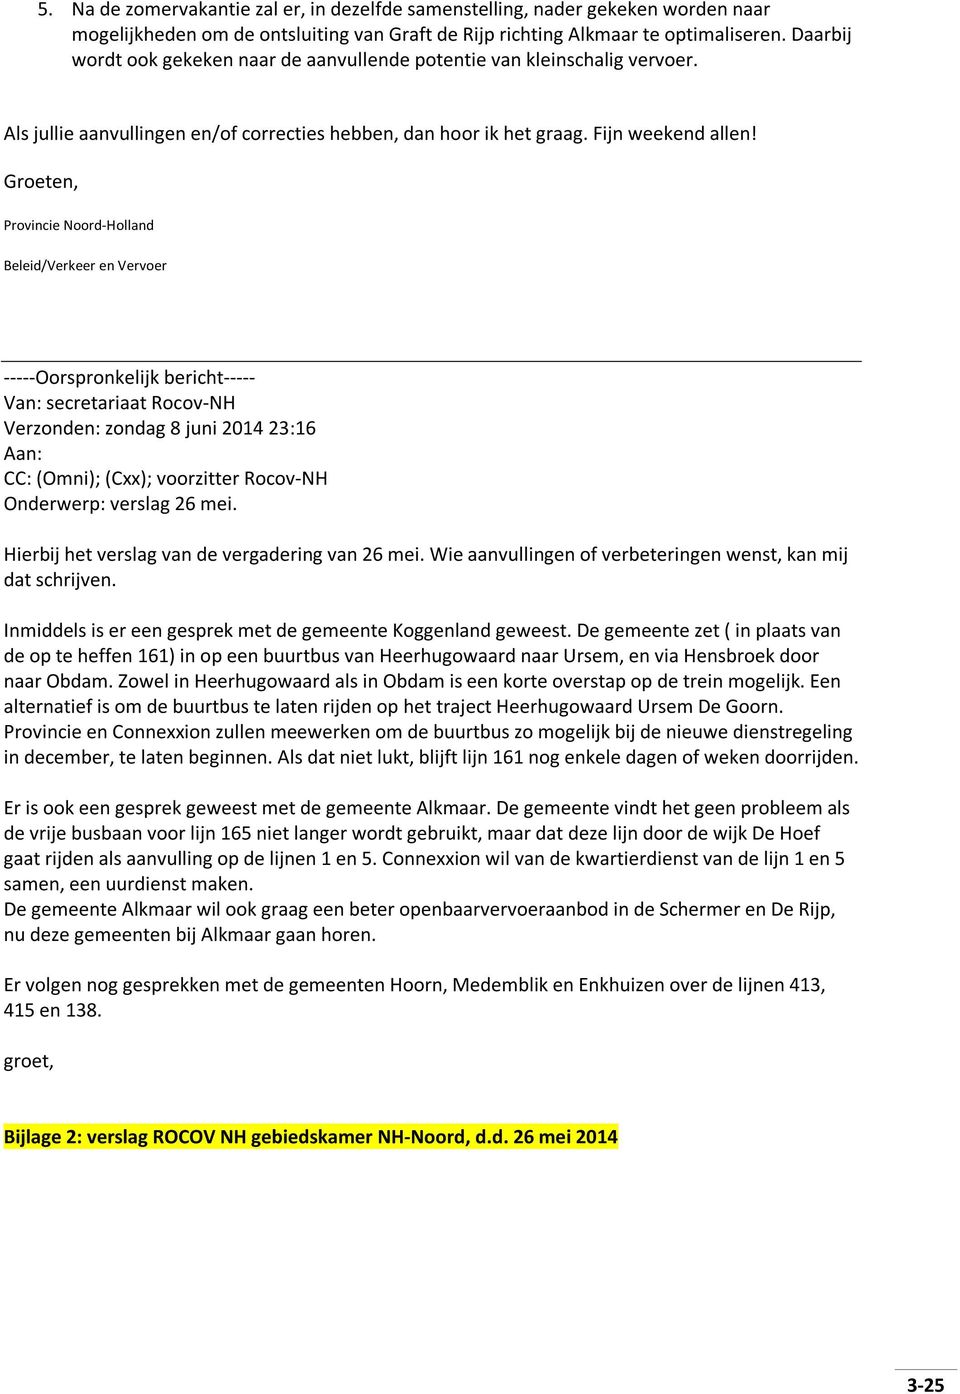 Groeten, Provincie Noord-Holland Beleid/Verkeer en Vervoer -----Oorspronkelijk bericht----- Van: secretariaat Rocov-NH Verzonden: zondag 8 juni 2014 23:16 Aan: CC: (Omni); (Cxx); voorzitter Rocov-NH